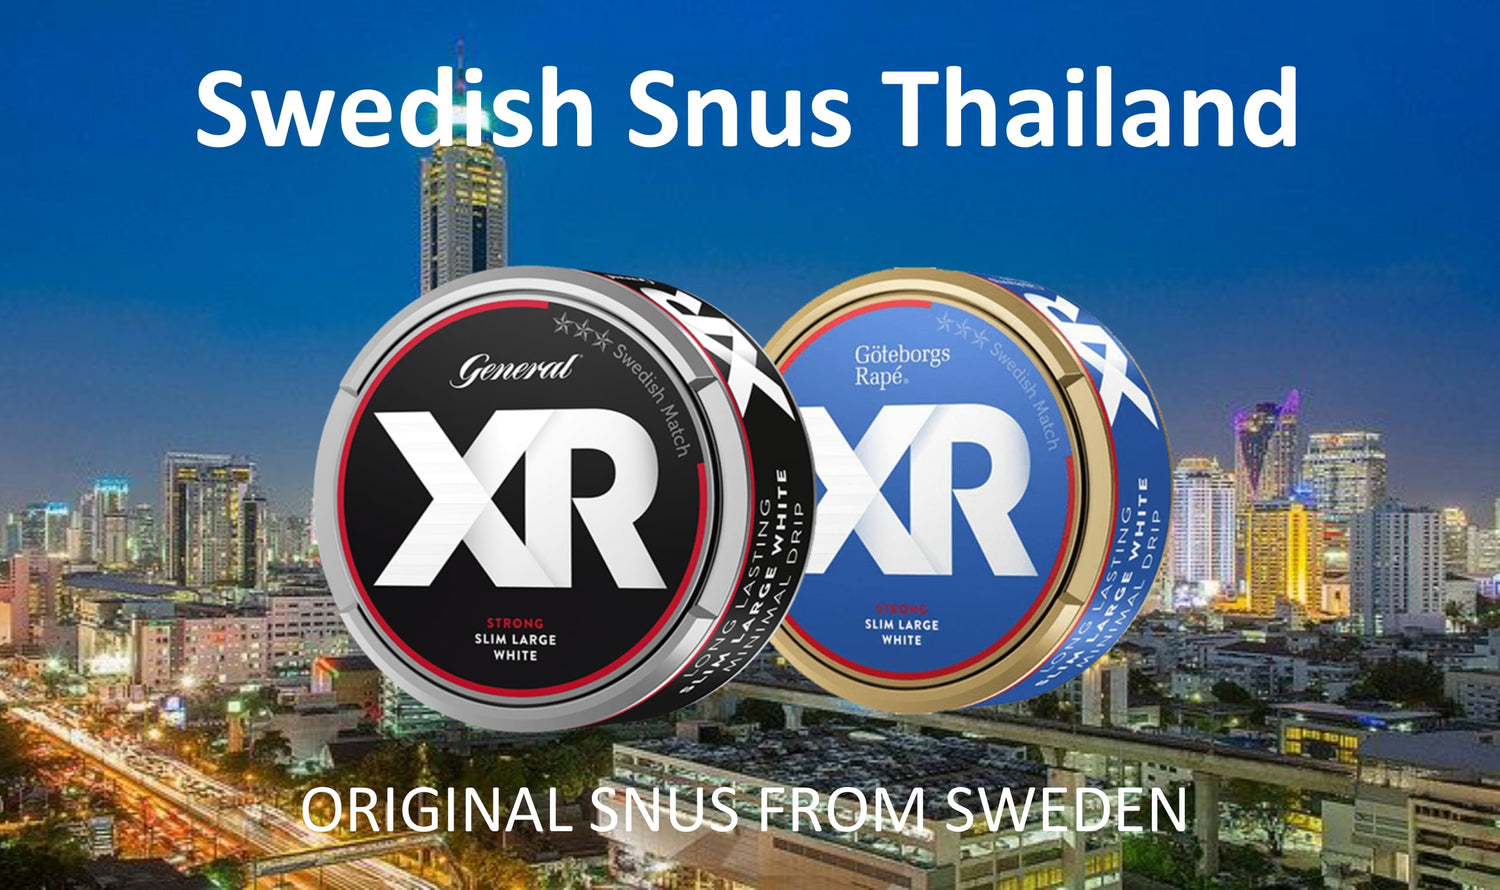 Swedish Snus Thailand Import